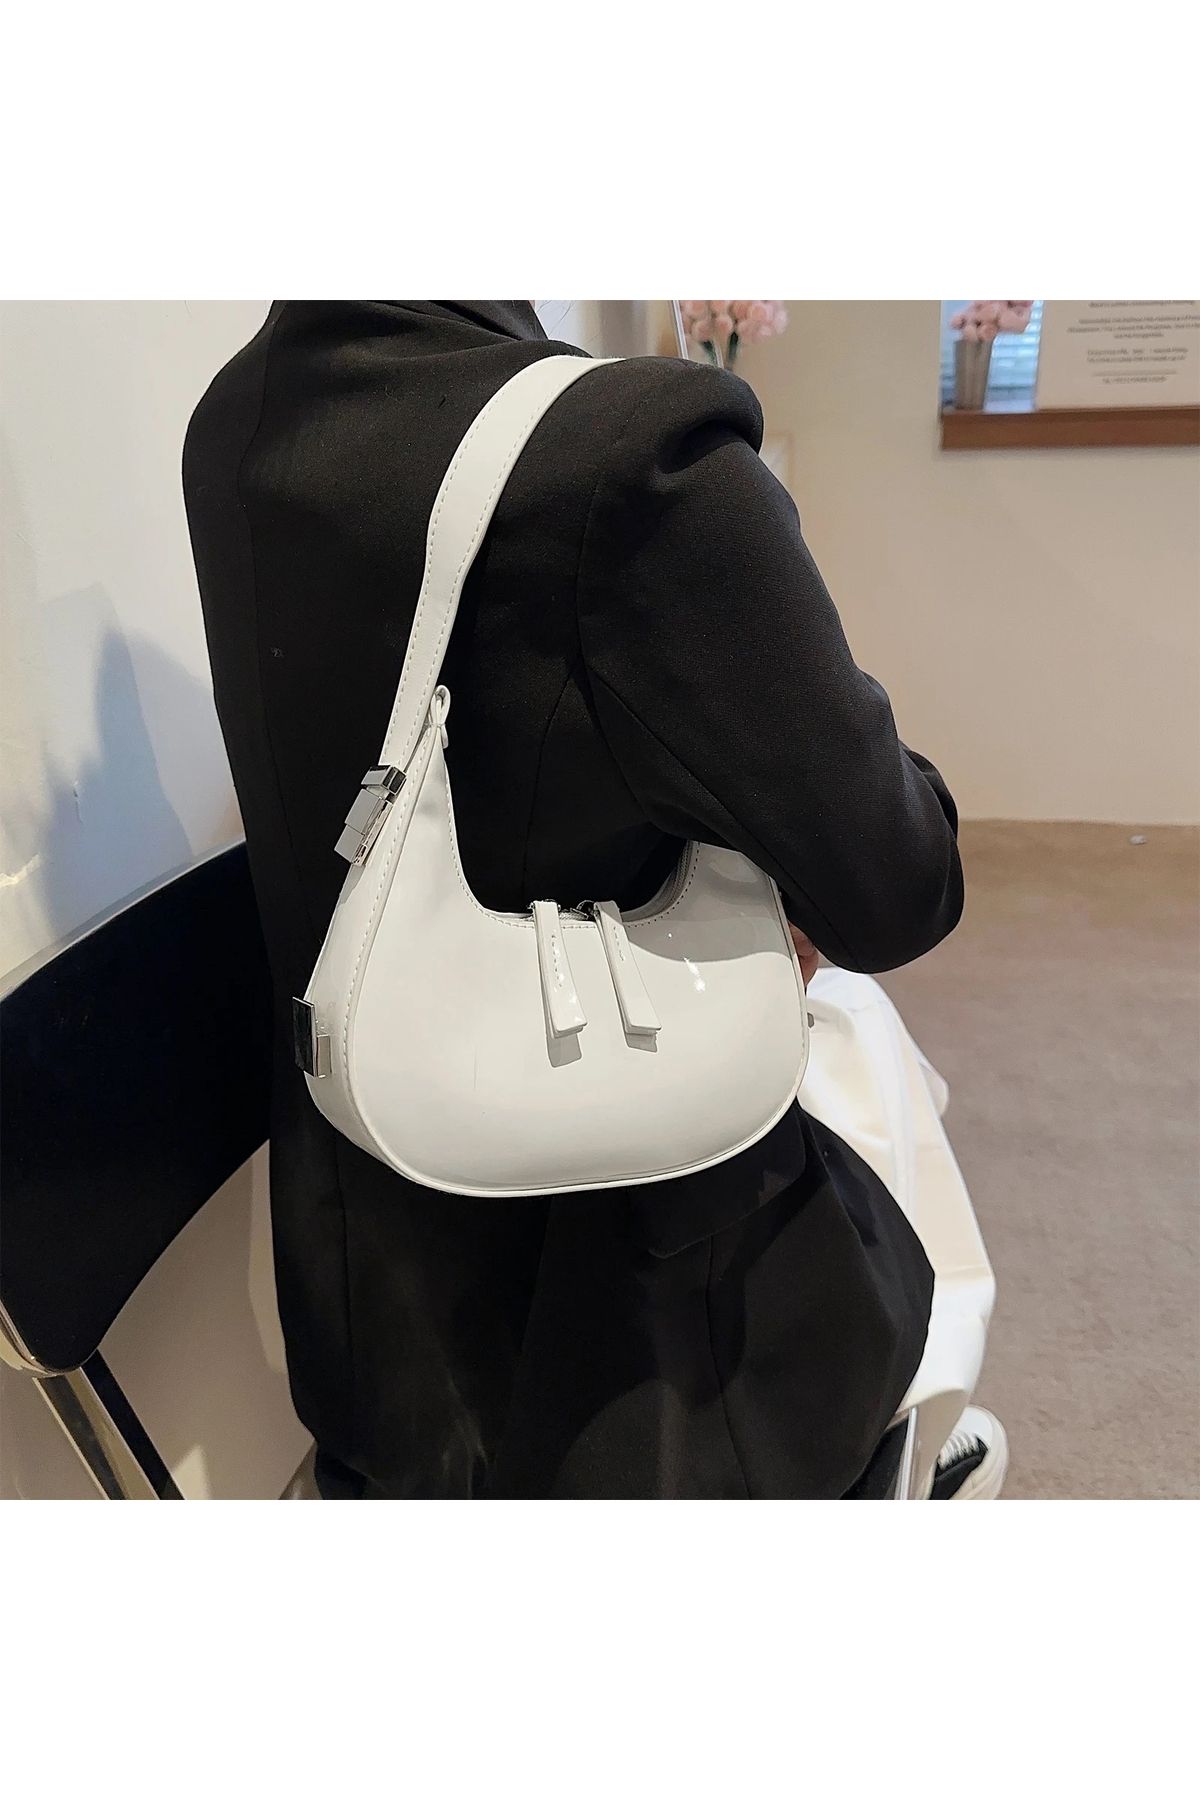 AsperaBag Kadın el ve omuz çantası parlak rugan baget çanta Trendyustute